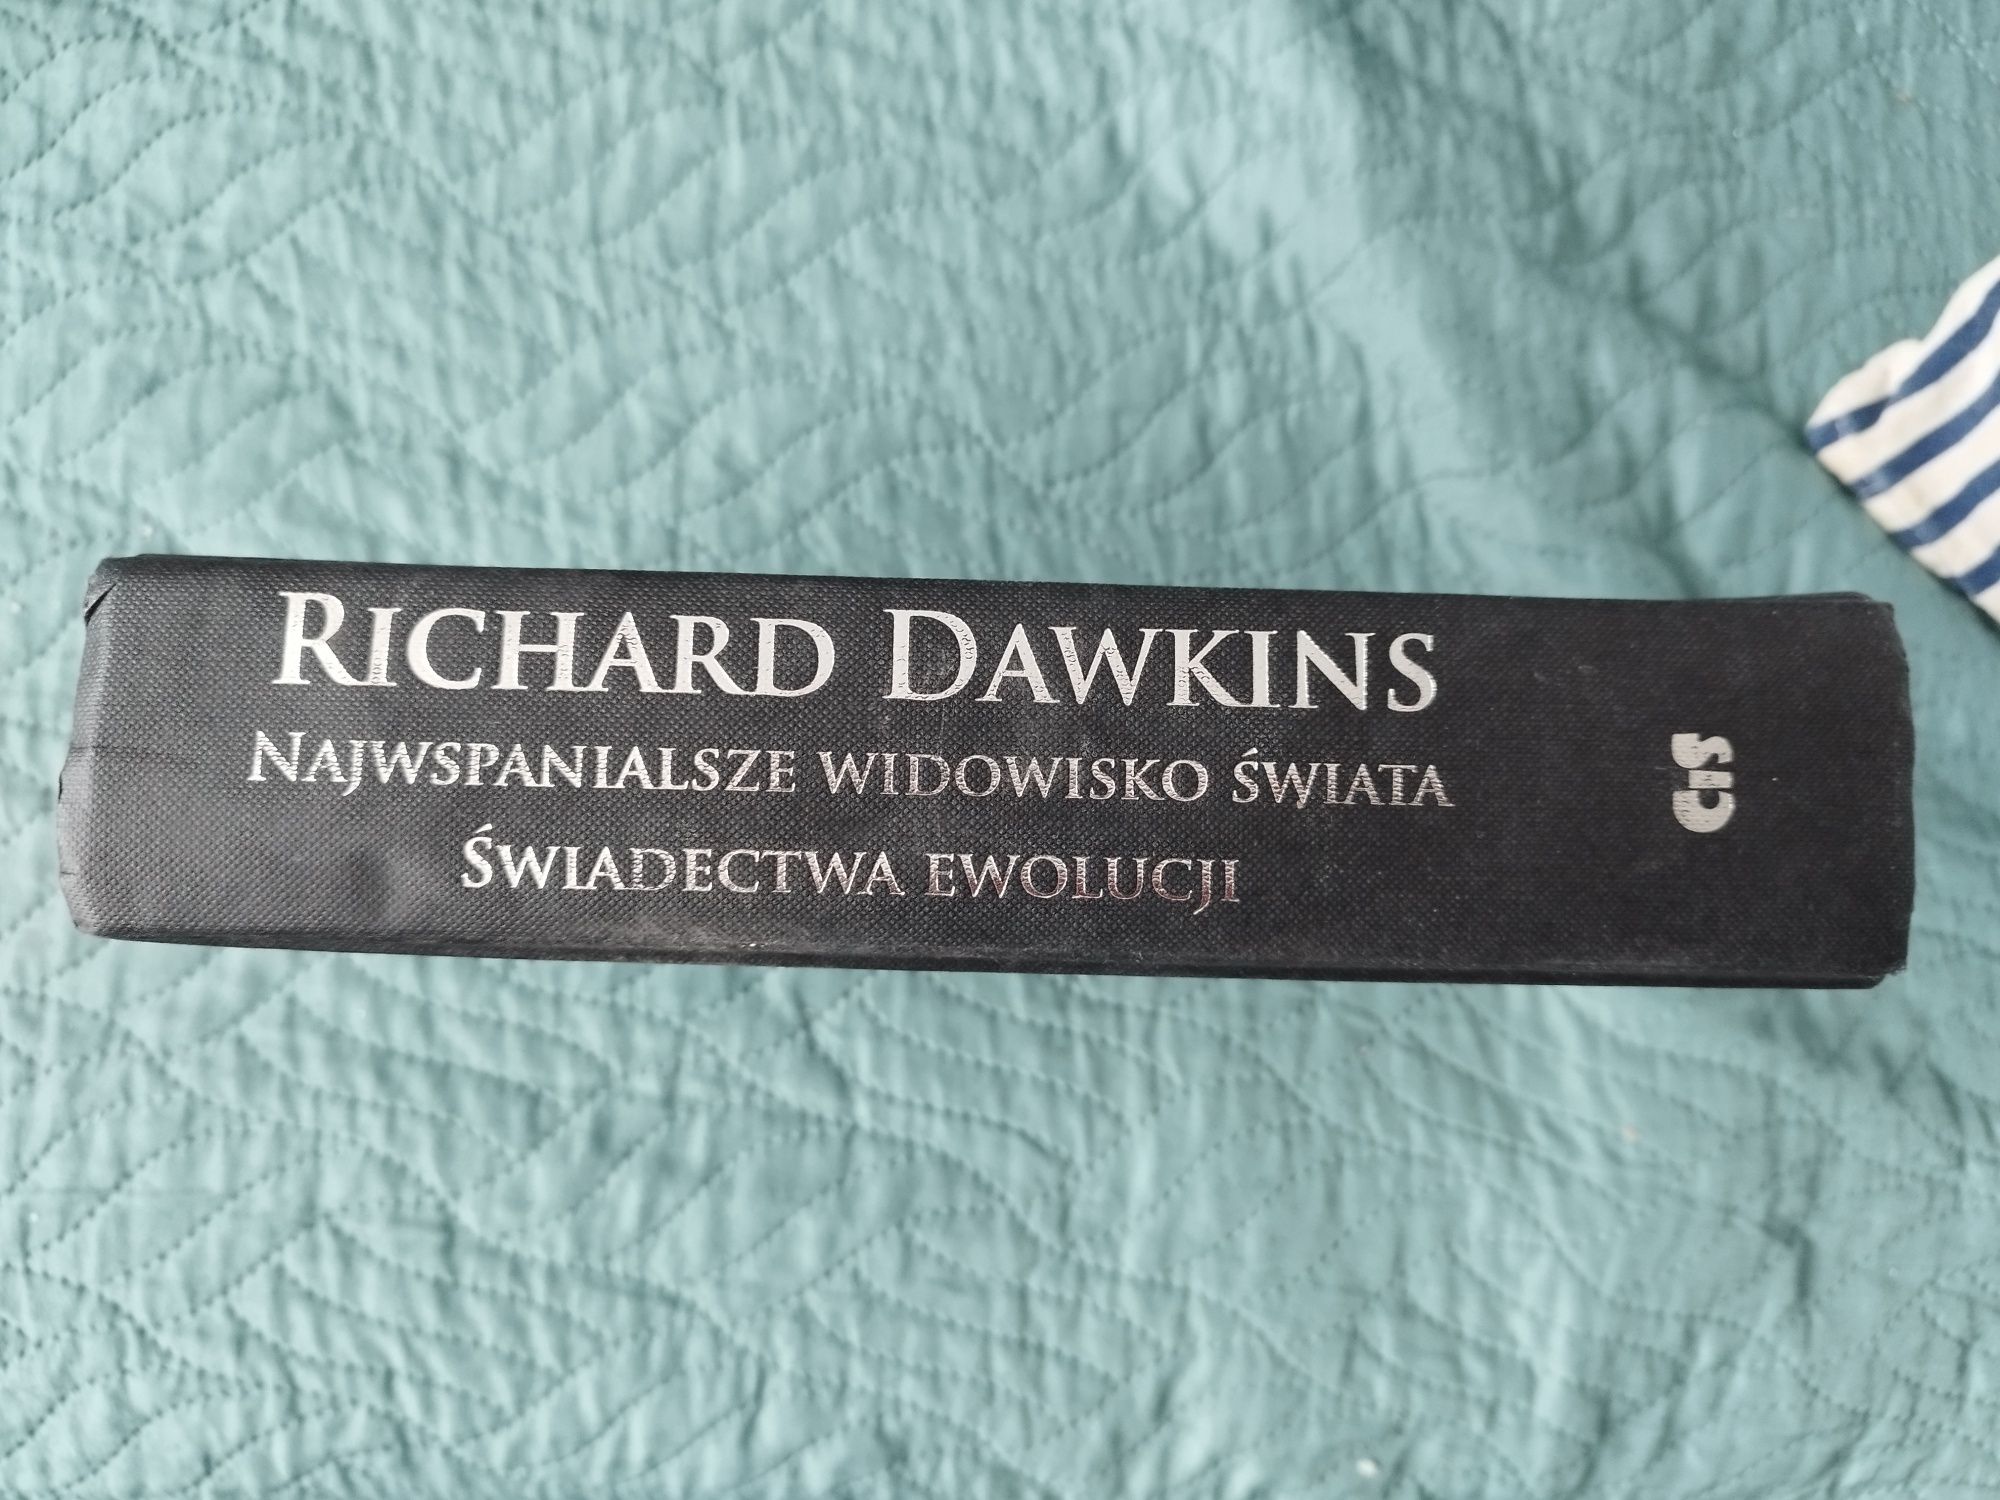 Richard Dawkins najwspanialsze widowisko świata świadectwa ewolucji